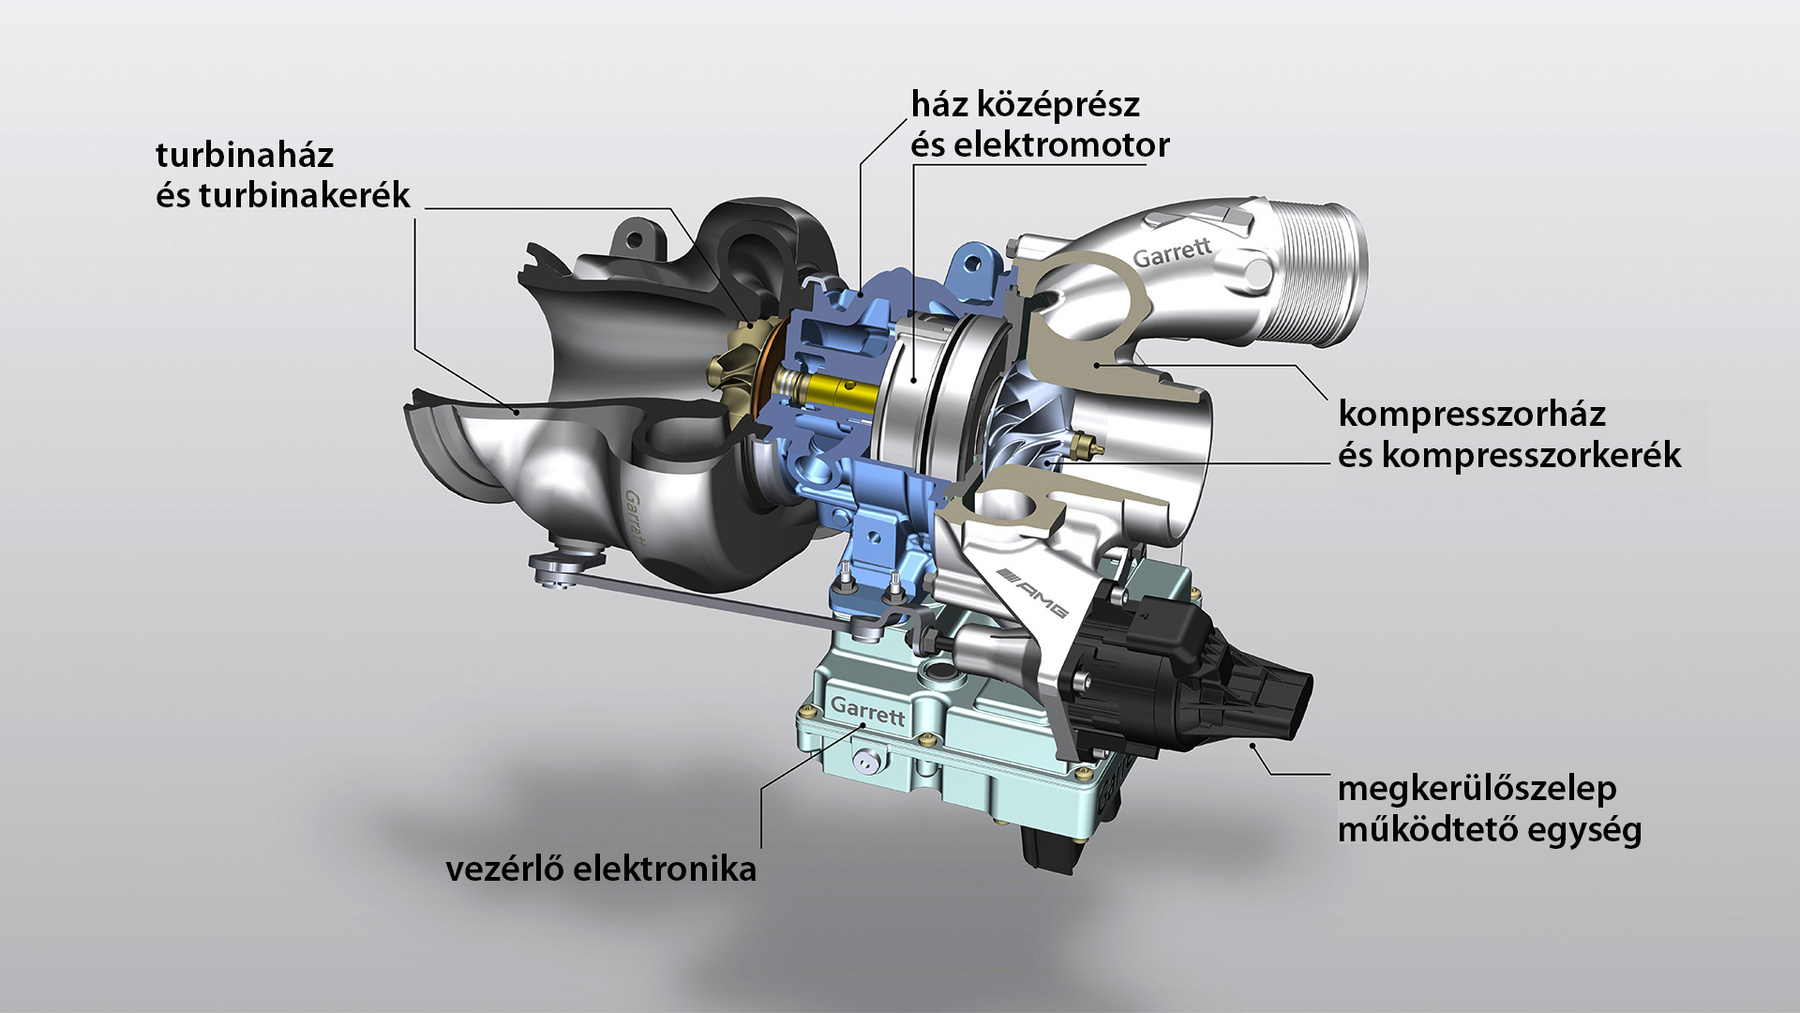 Már 1500/perces fordulatnál 350 Nm a kettős feltöltésű, háromliteres, V6-os Audi dízelmotor forgatónyomatéka, ami utána meredeken emelkedik